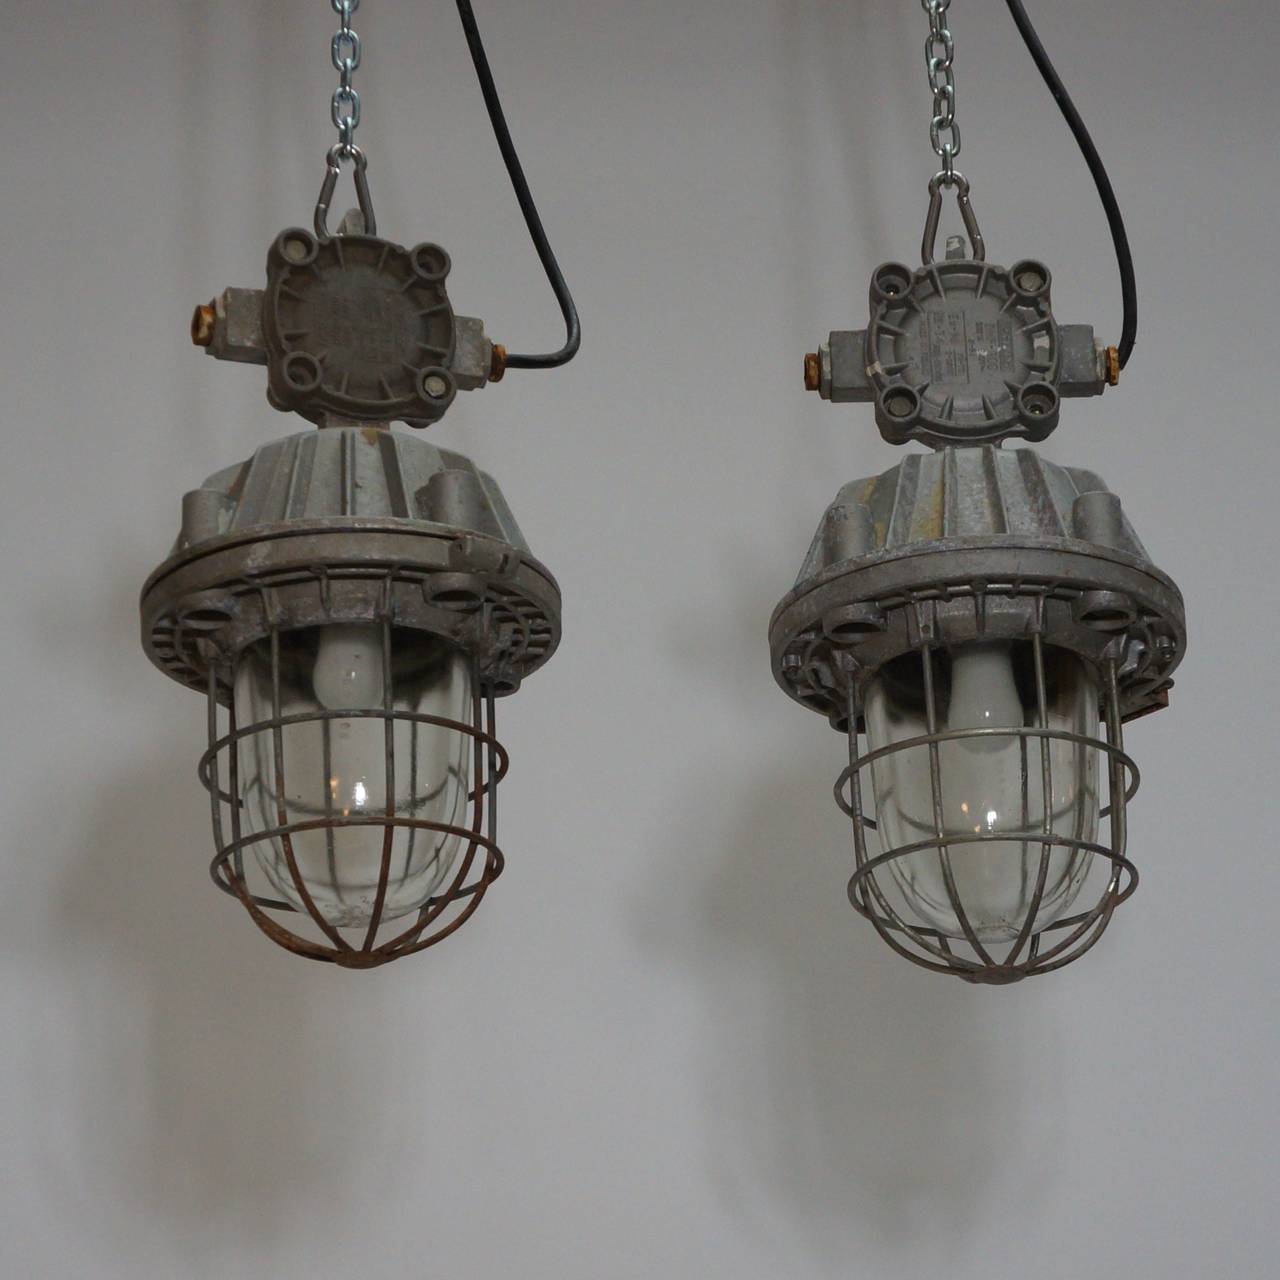 Pair of Vintage Industrial Lights 1